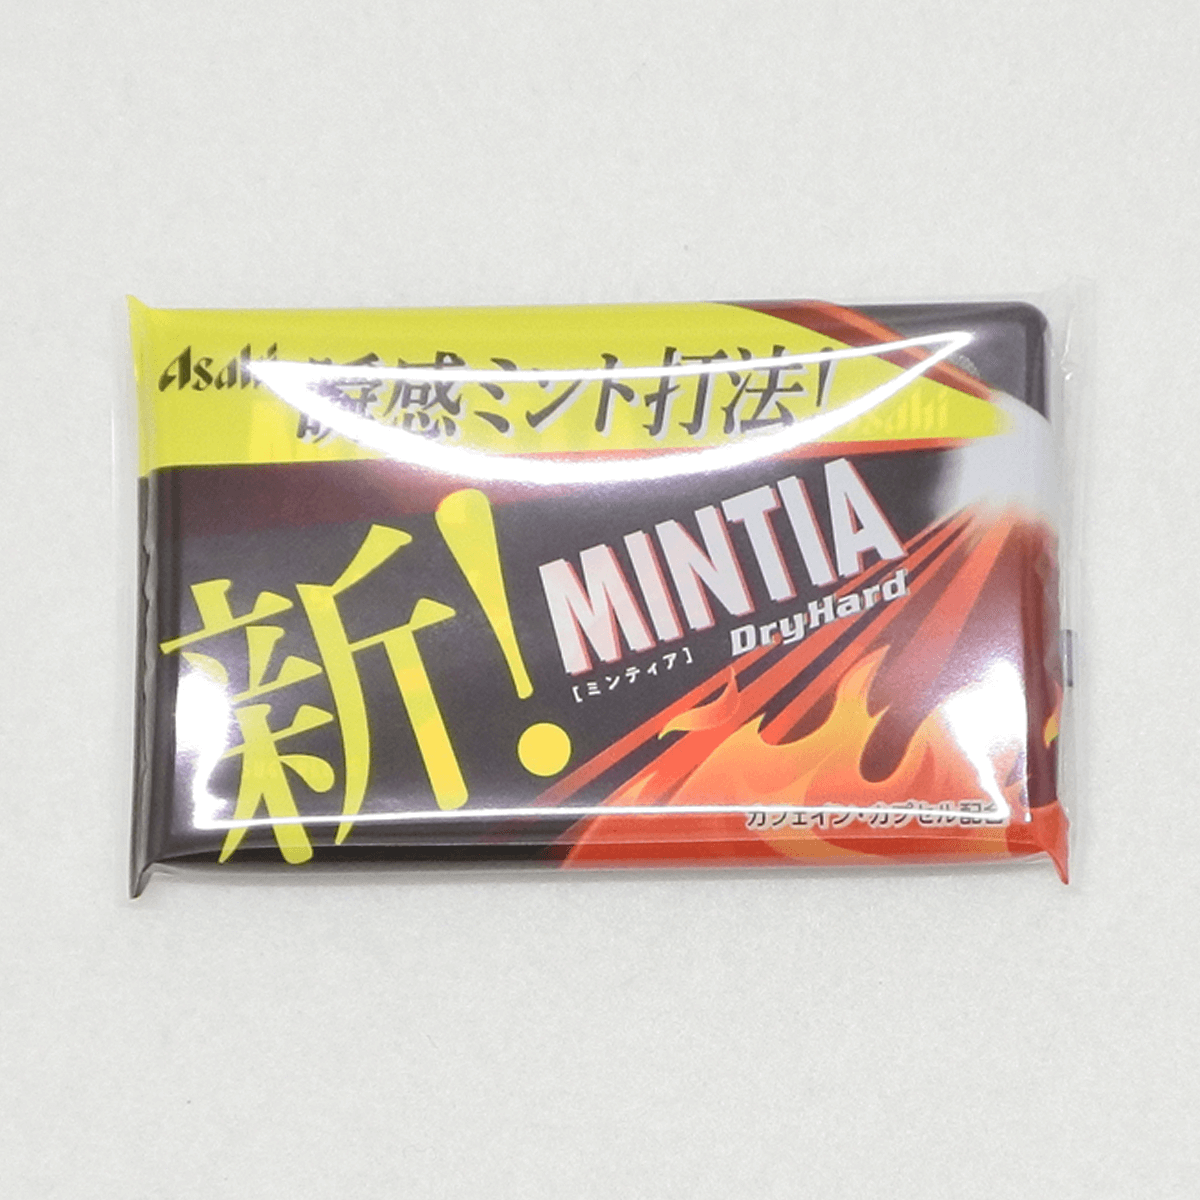 Kẹo ngậm Dry Hard Mintia không đường 50 viên - Hàng Nhật nội địa